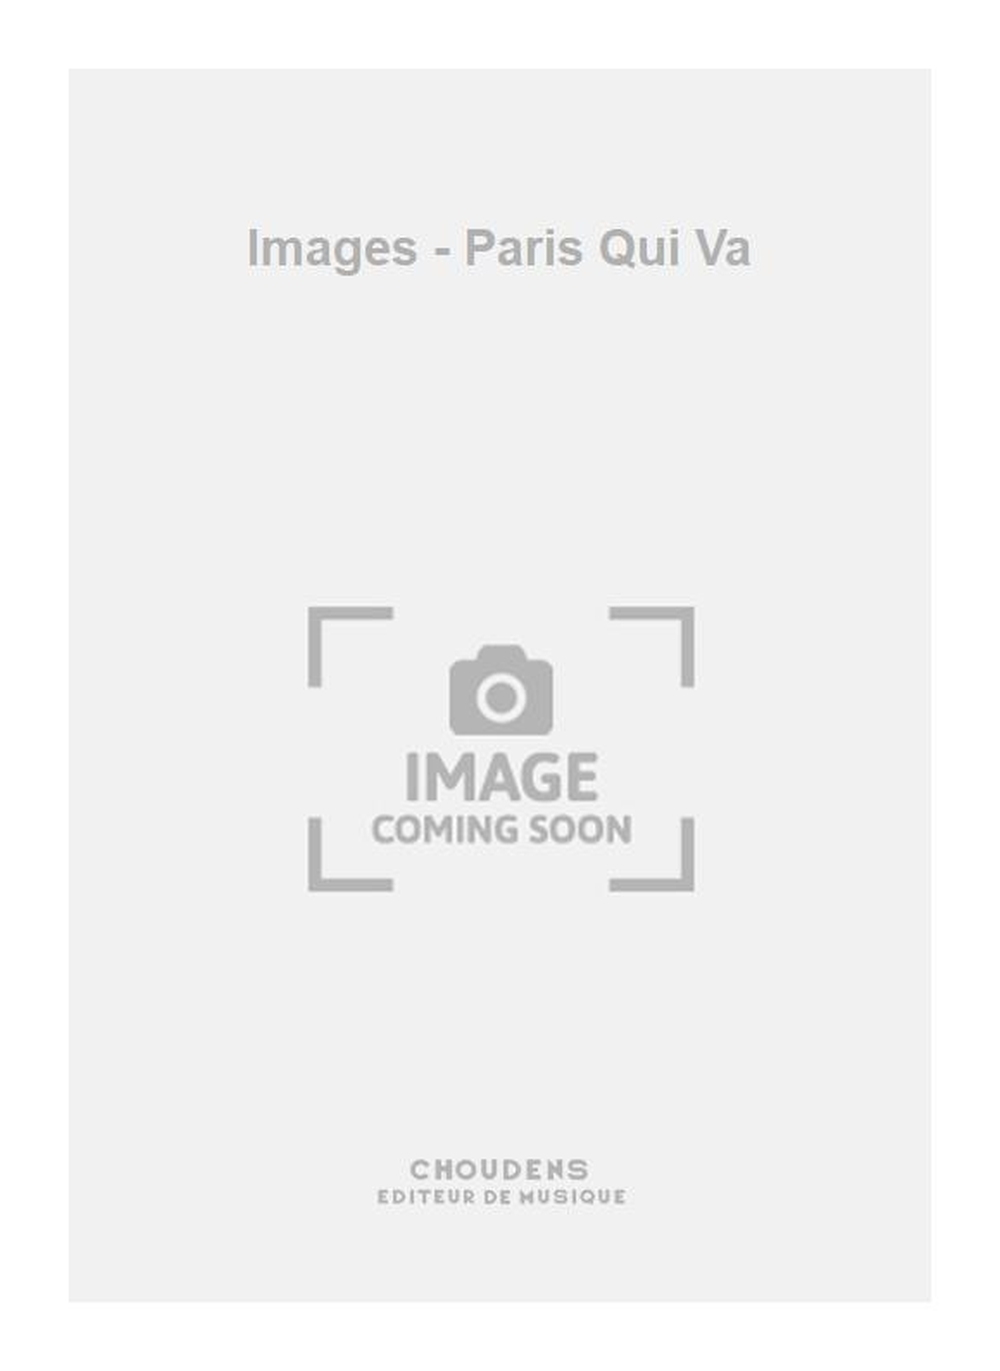 Images - Paris Qui Va